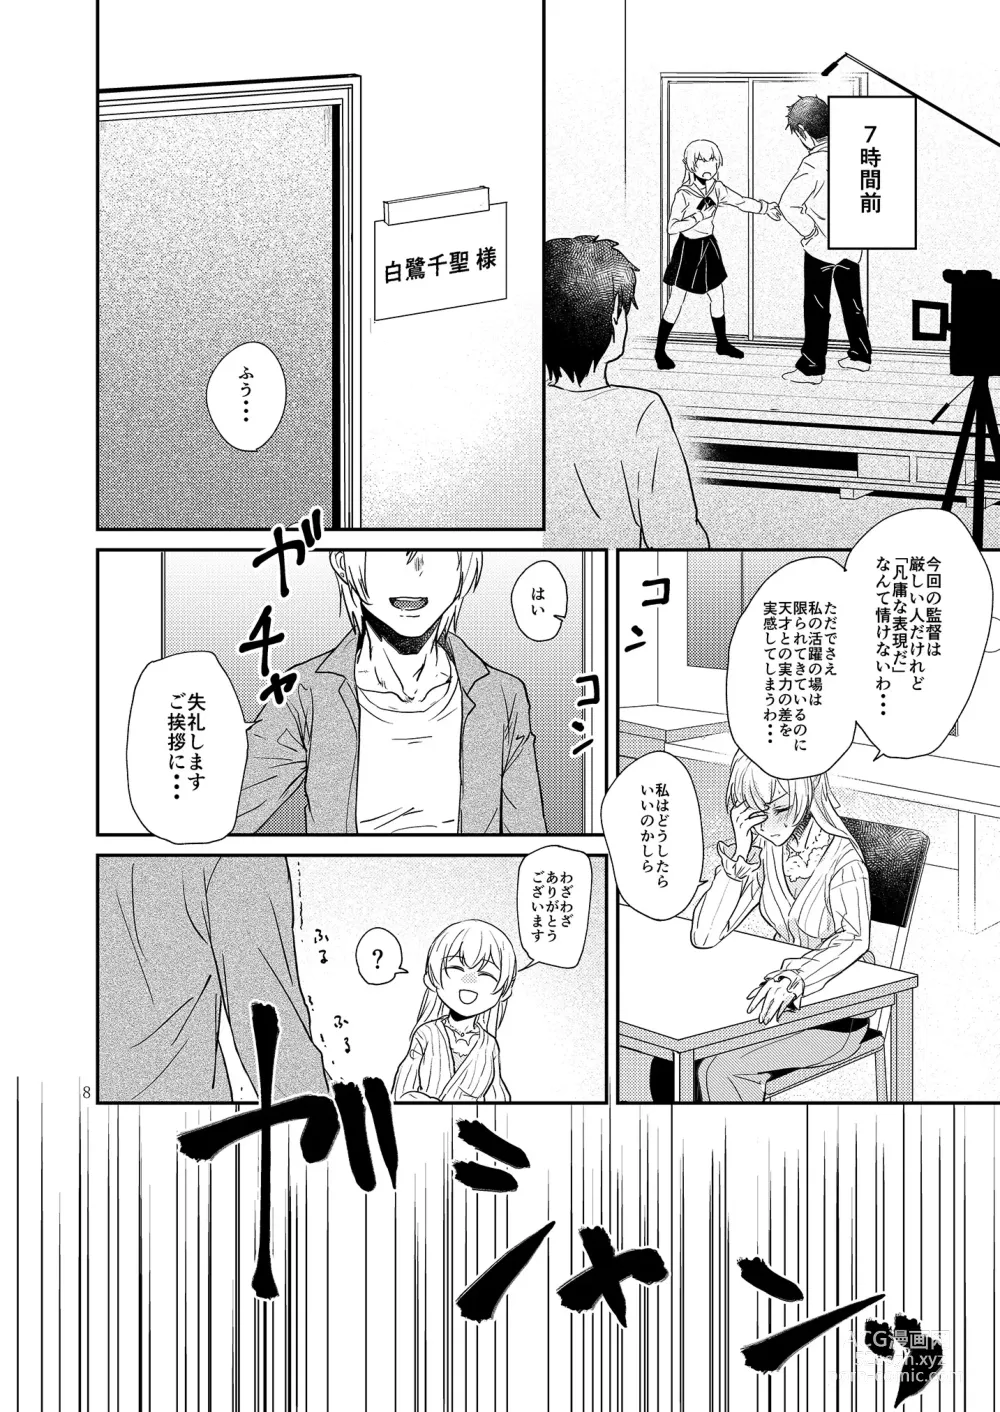 Page 8 of doujinshi Kimi no Tame ni Watashi ni wa